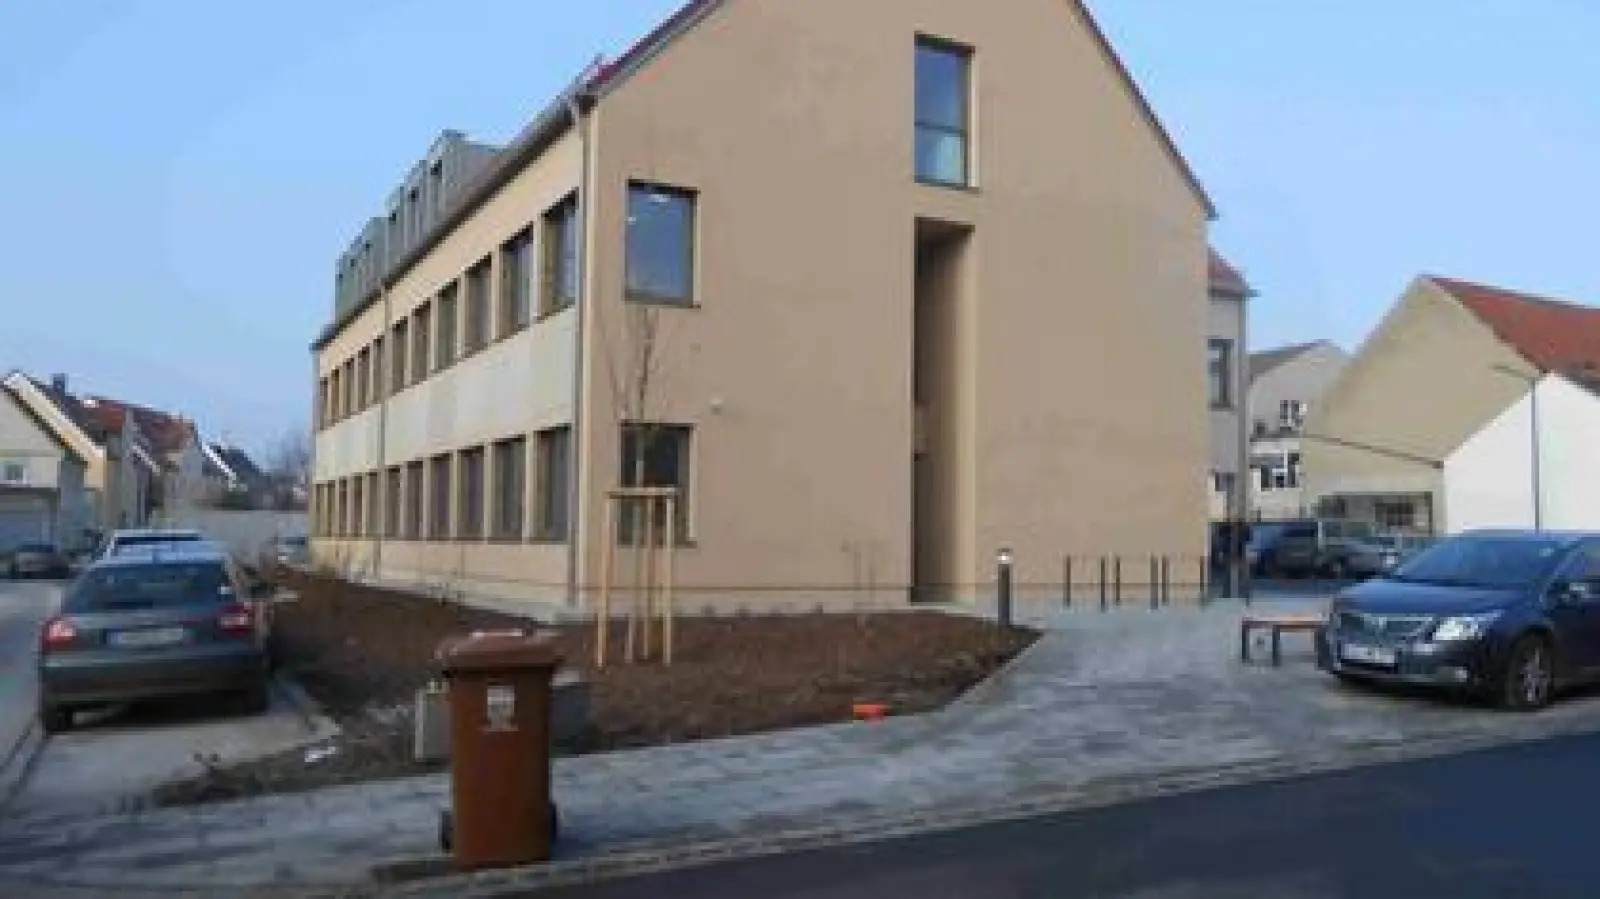 Das Ärztehaus ist fertig.   Es soll die medizinische Versorgung in der Gemeinde Pöttmes langfristig sichern. 	Foto: Willi Wagner (Foto: Willi Wagner)